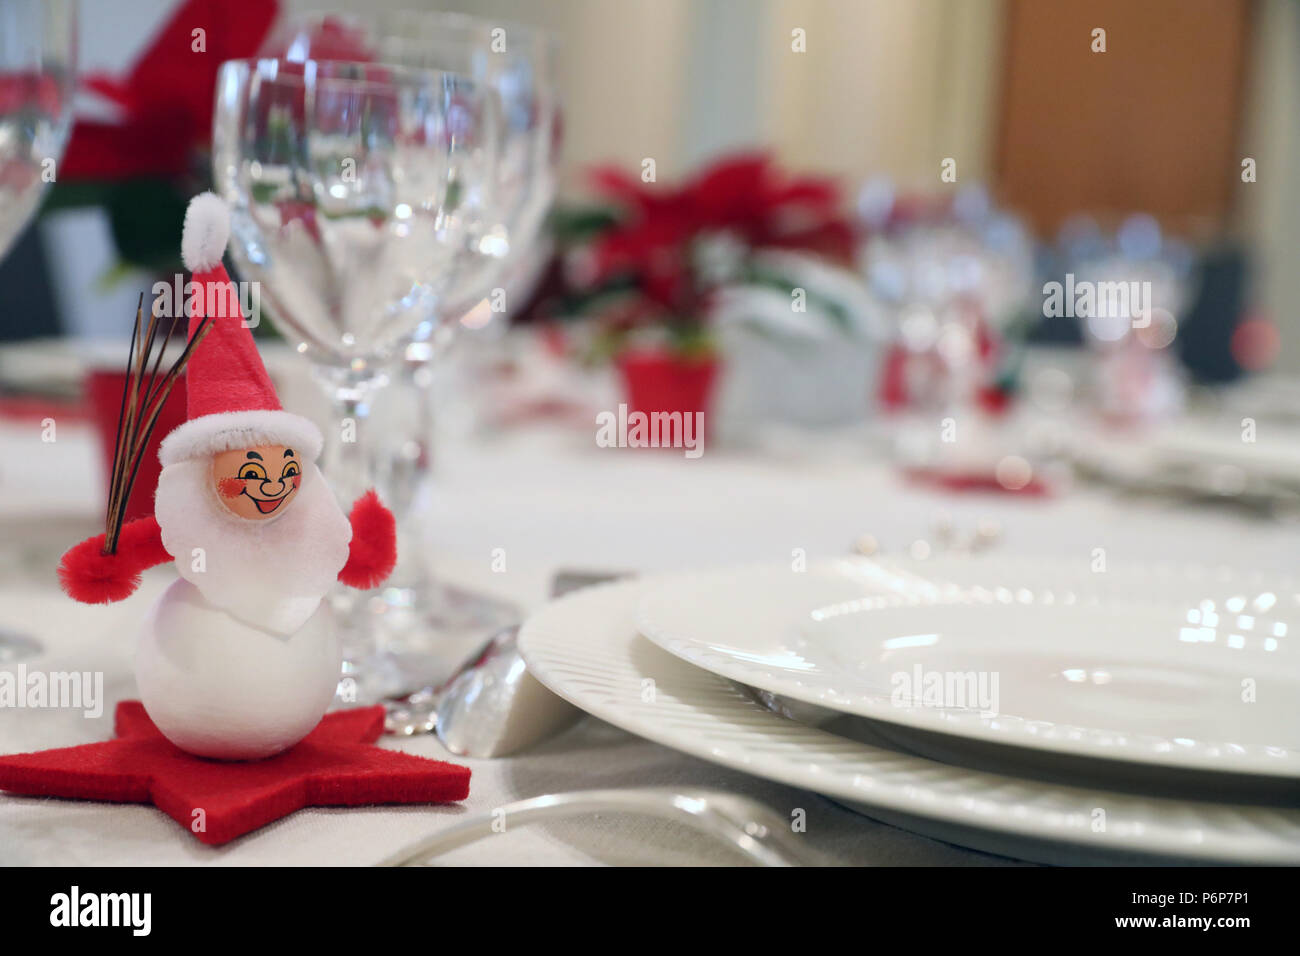 Le decorazioni di Natale sulla tavola da pranzo. Ginevra. La Svizzera. Foto Stock